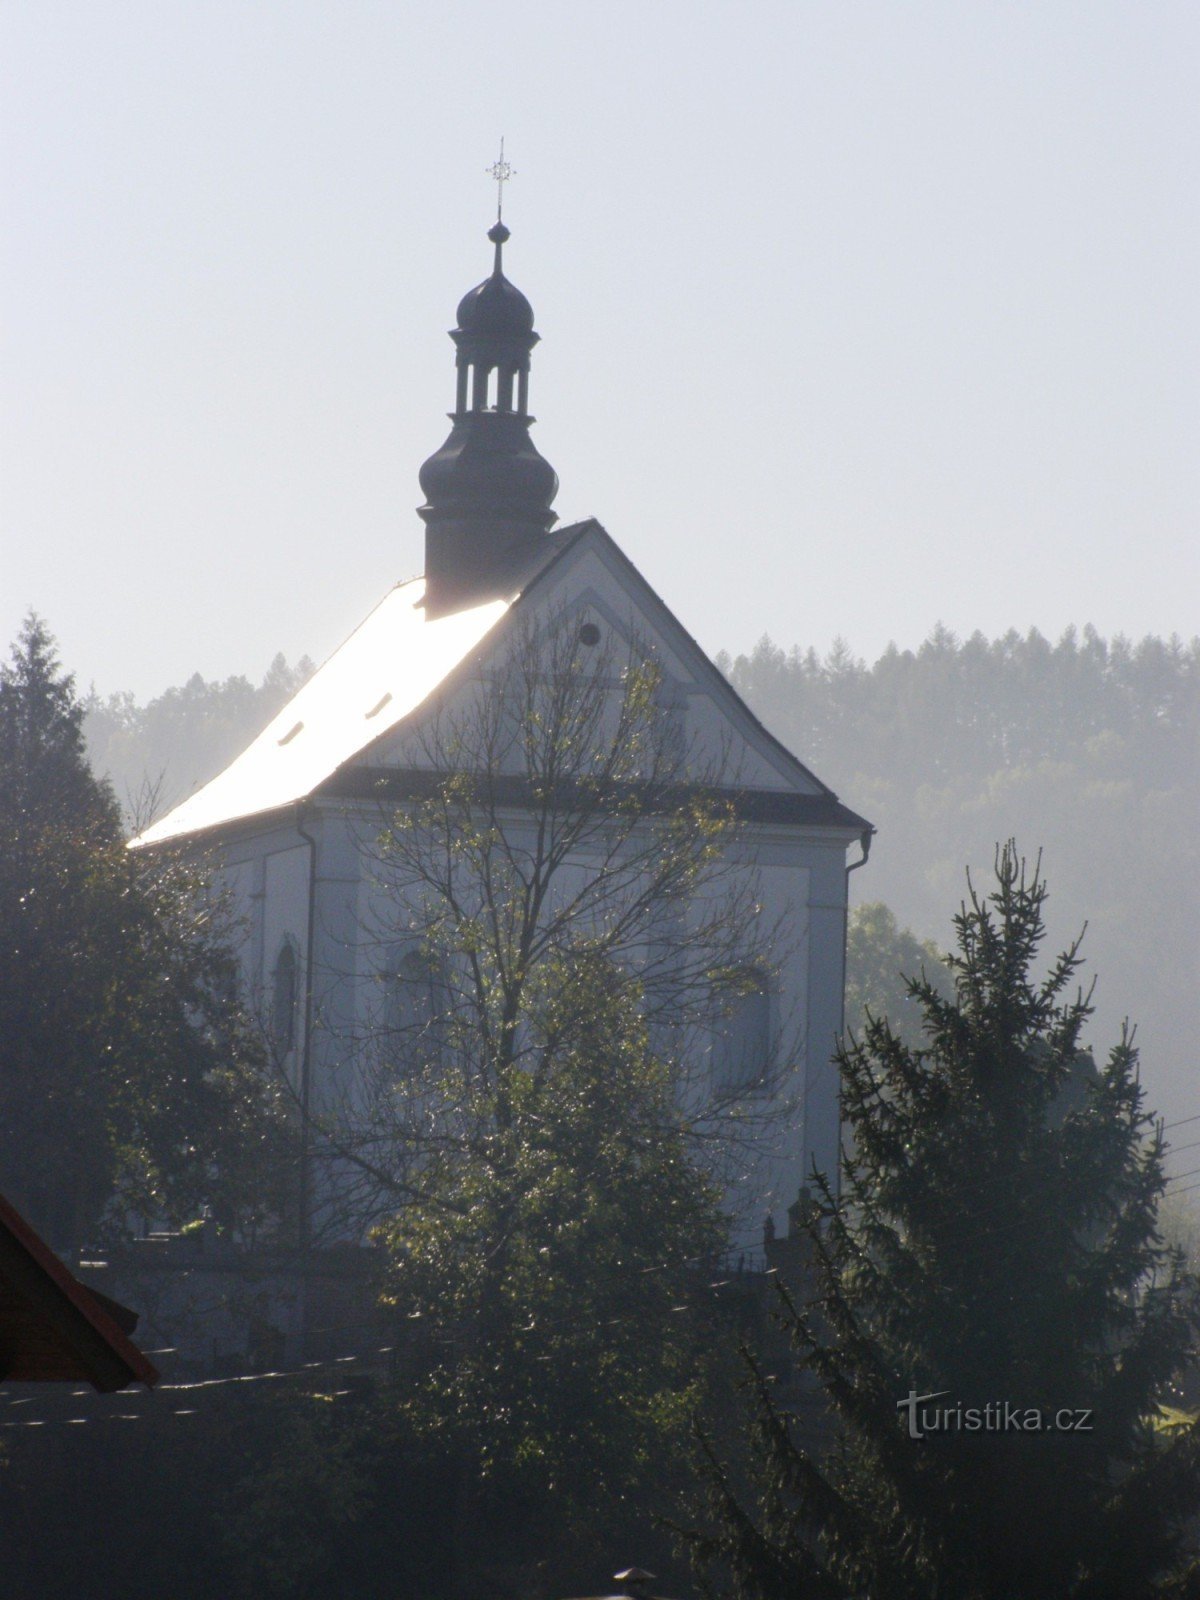 Semily - Church of St. Johannes Døberen